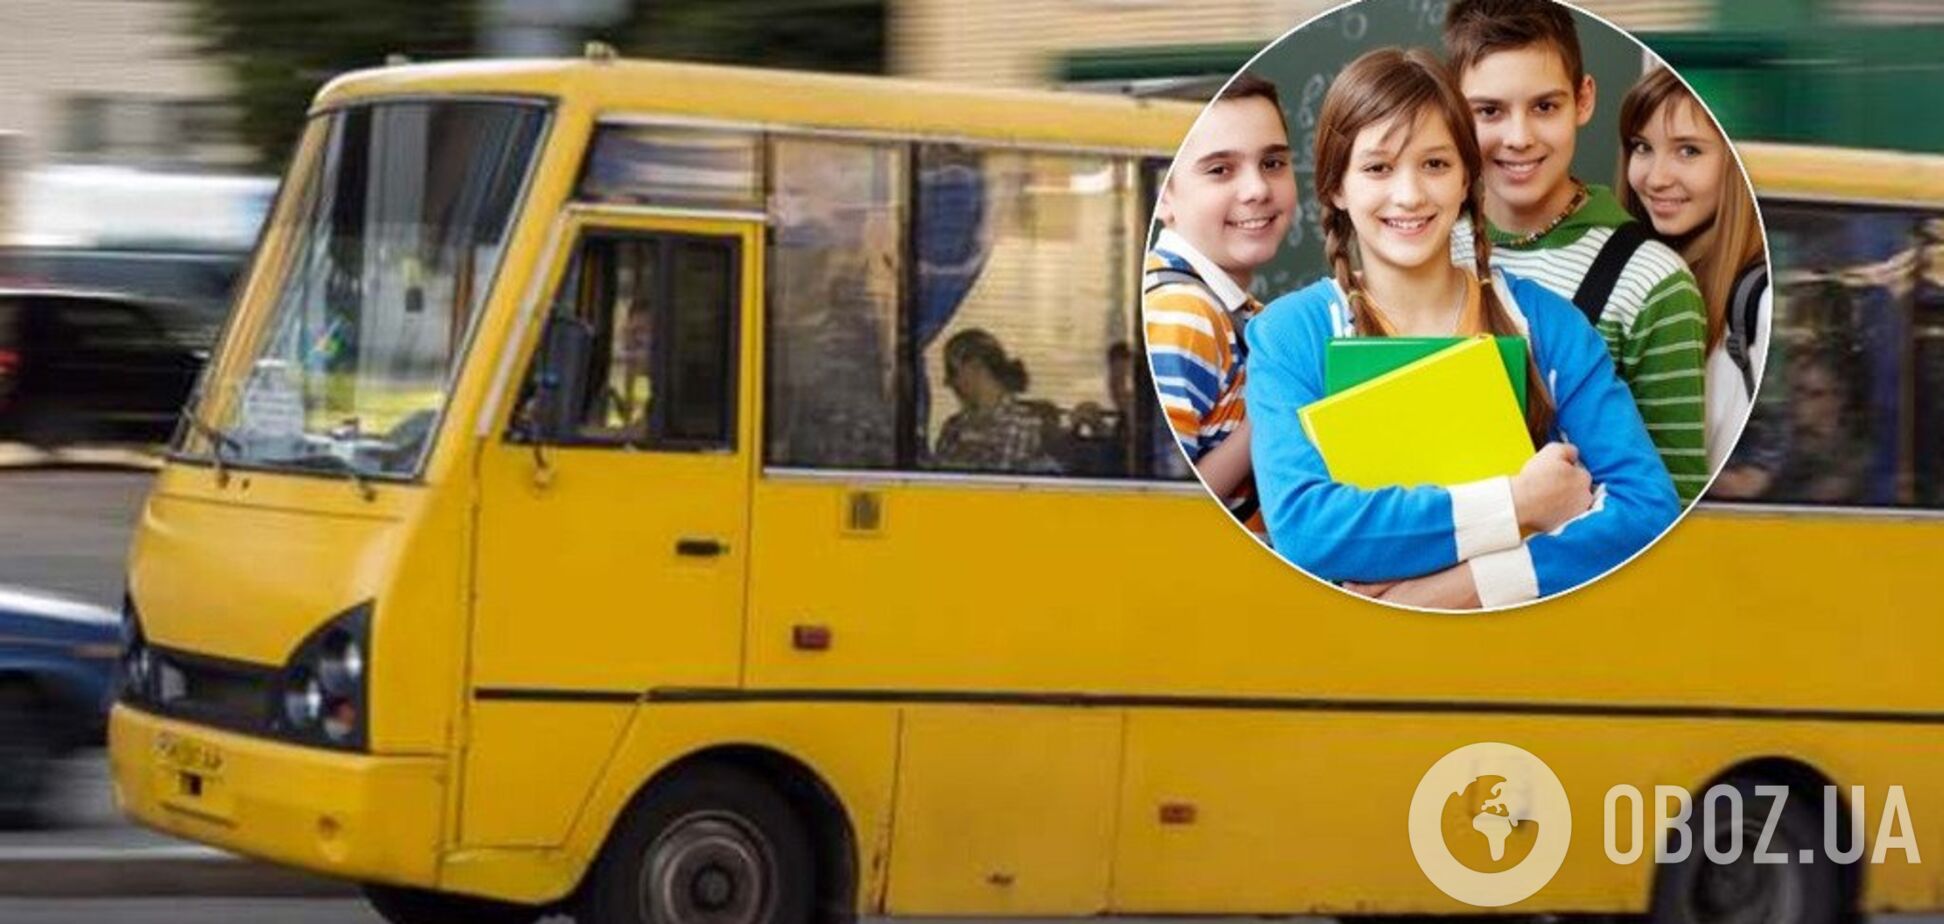 На Київщині водій маршрутки потрапив у скандал з школярами. Ілюстрація